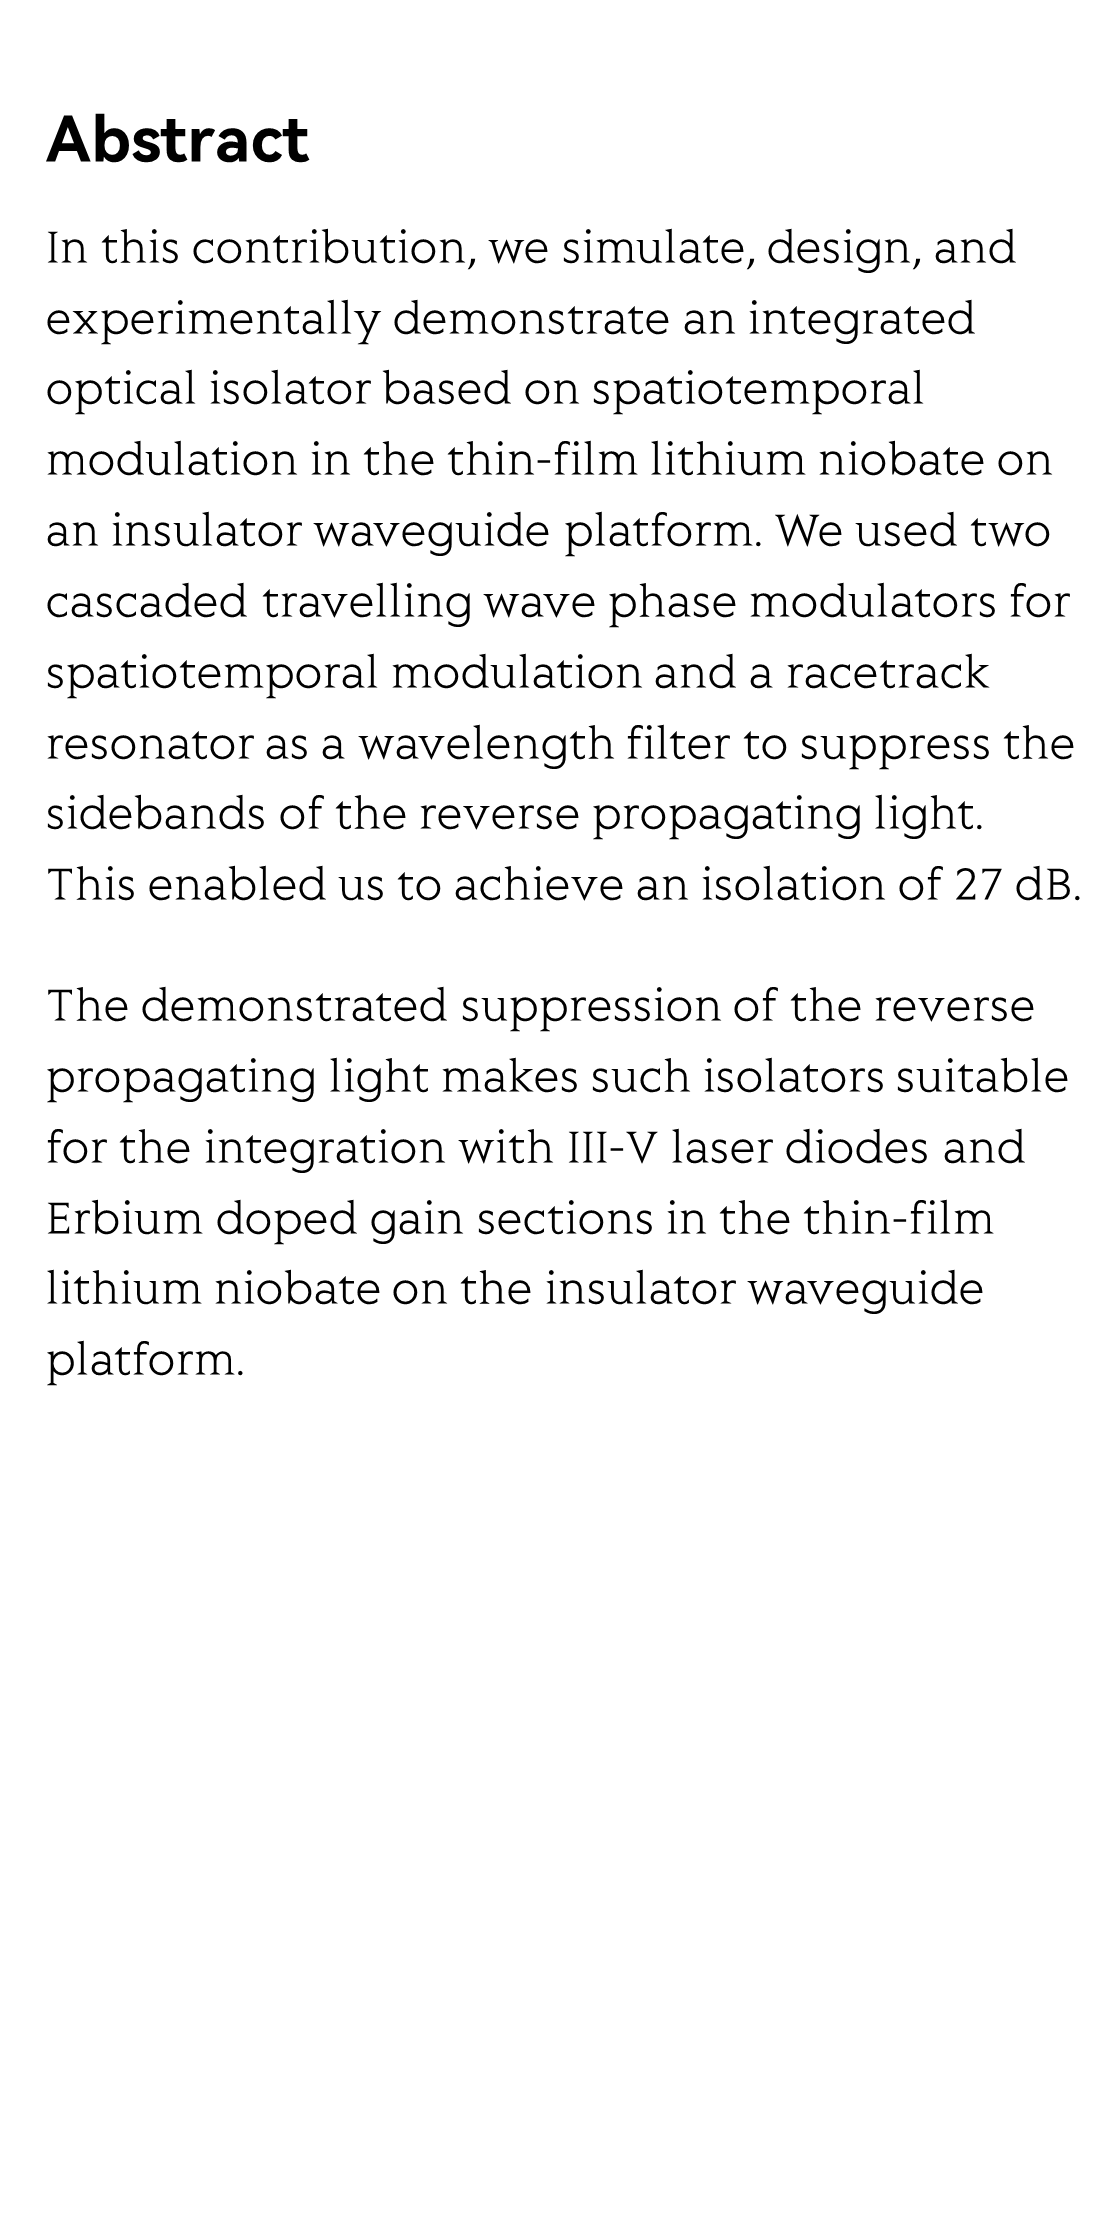 Spatio-temporal isolator in lithium niobate on insulator_2